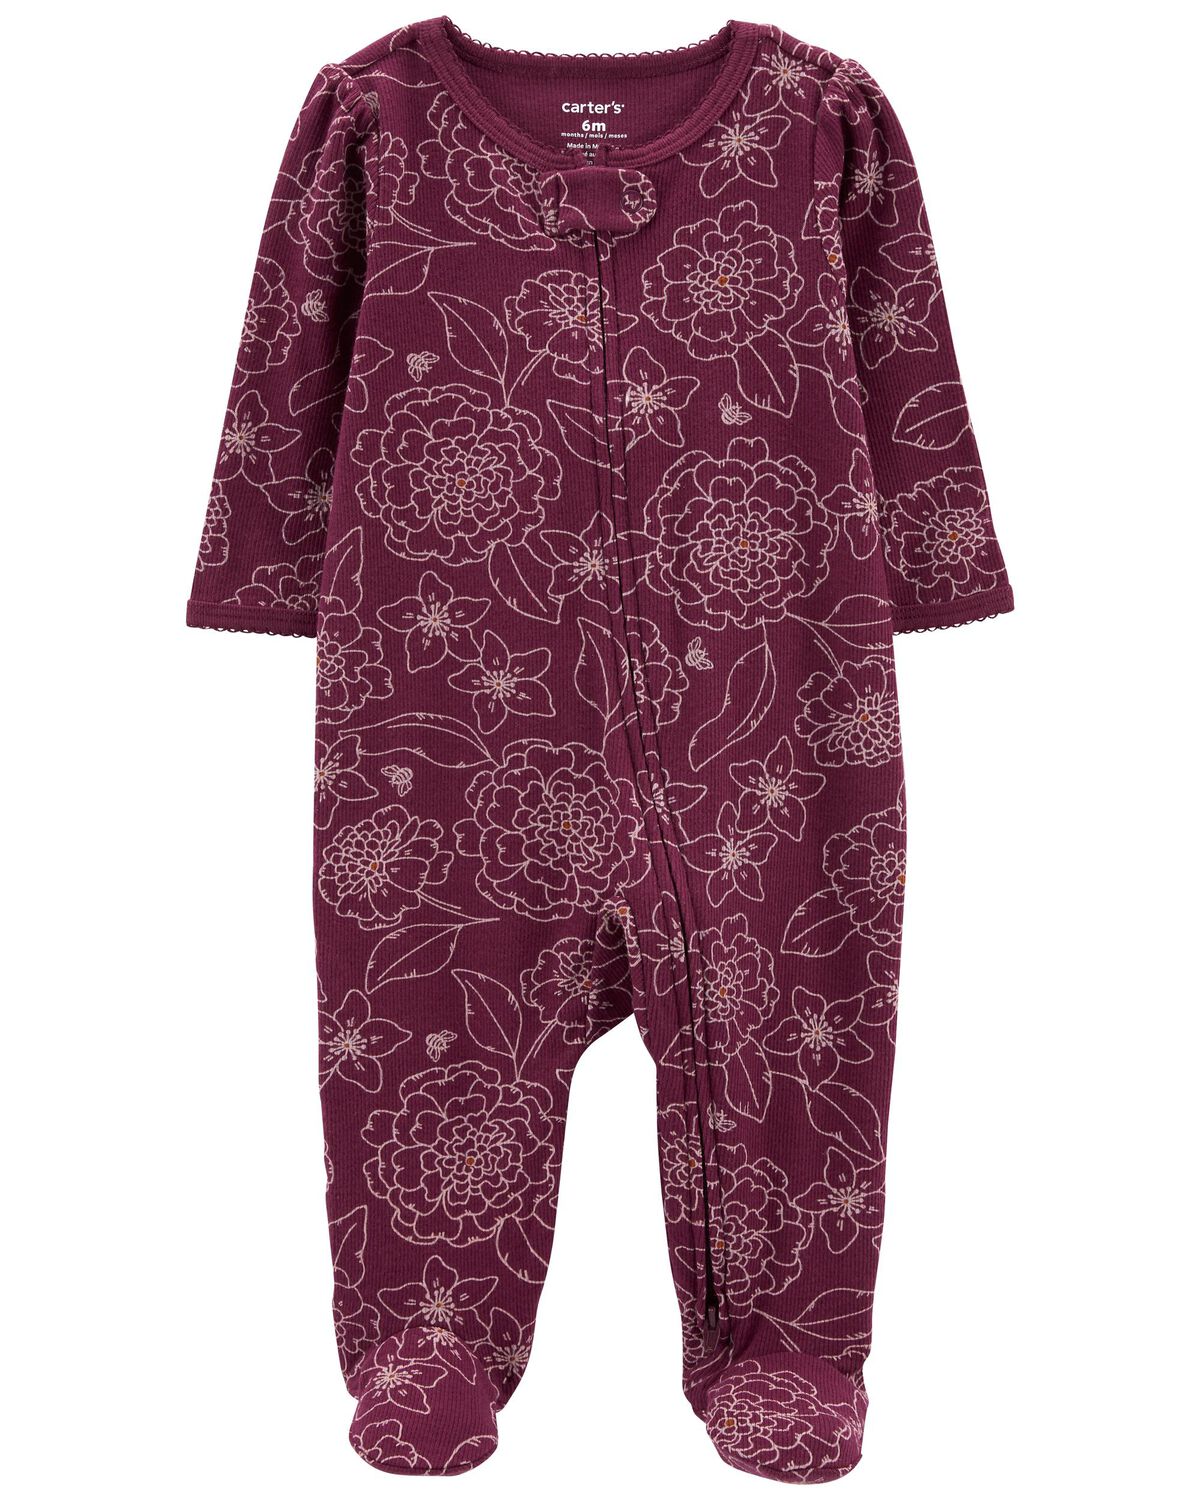 Baby 1-Piece Floral Sleep & Play Pajamas